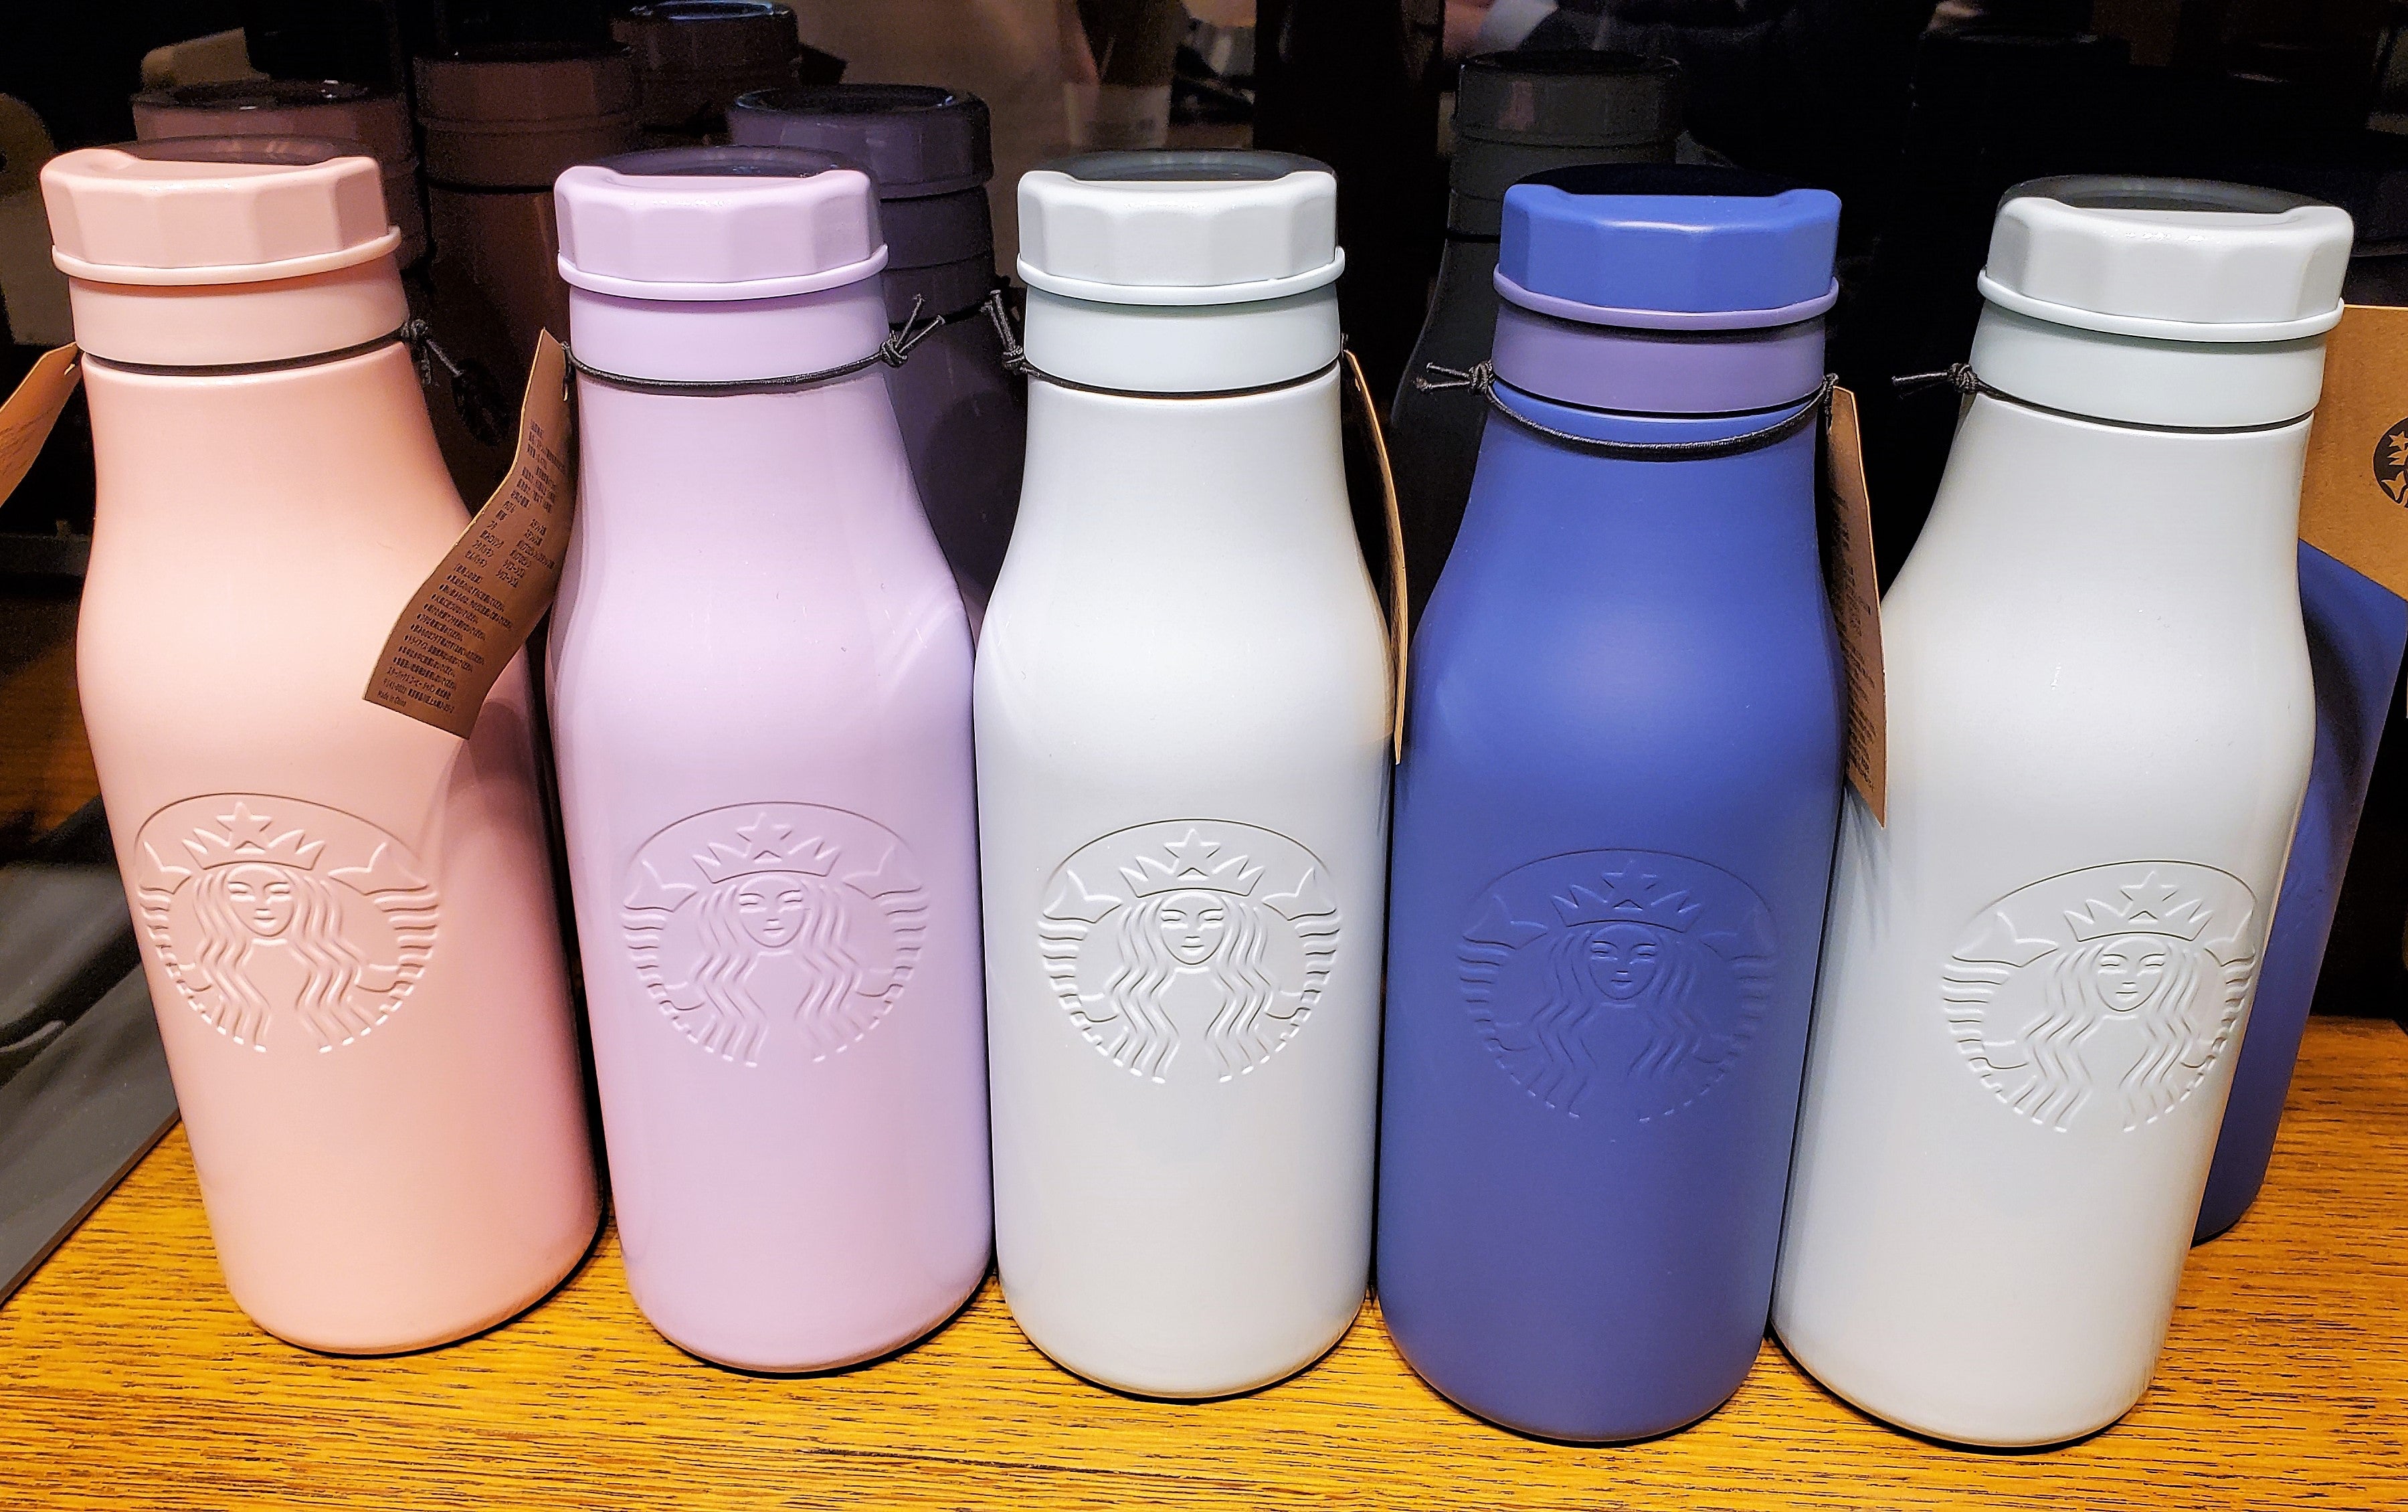 uuのスタバ【新品未使用】Starbucks ステンレスロゴボトル☆2色セット☆ブルー系